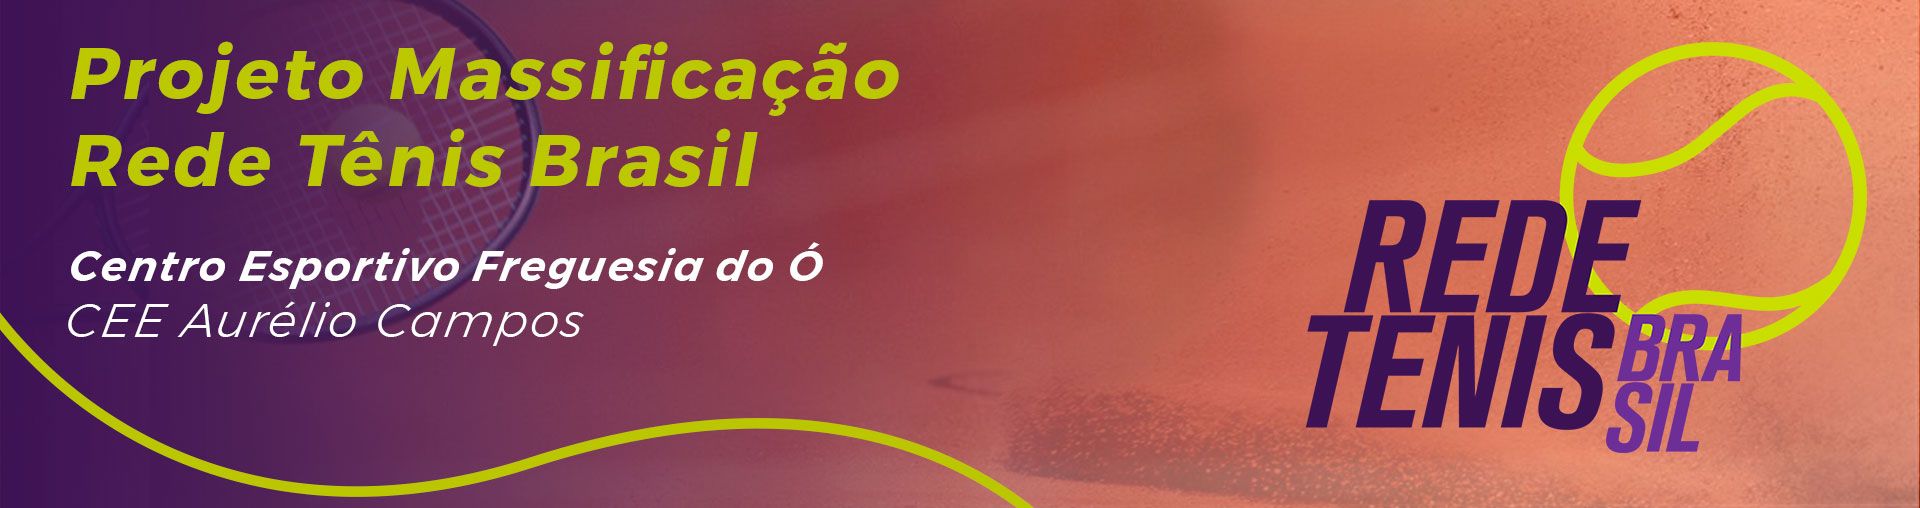 Arte divulgando o Projeto Massificação Rede Tênis Brasil.